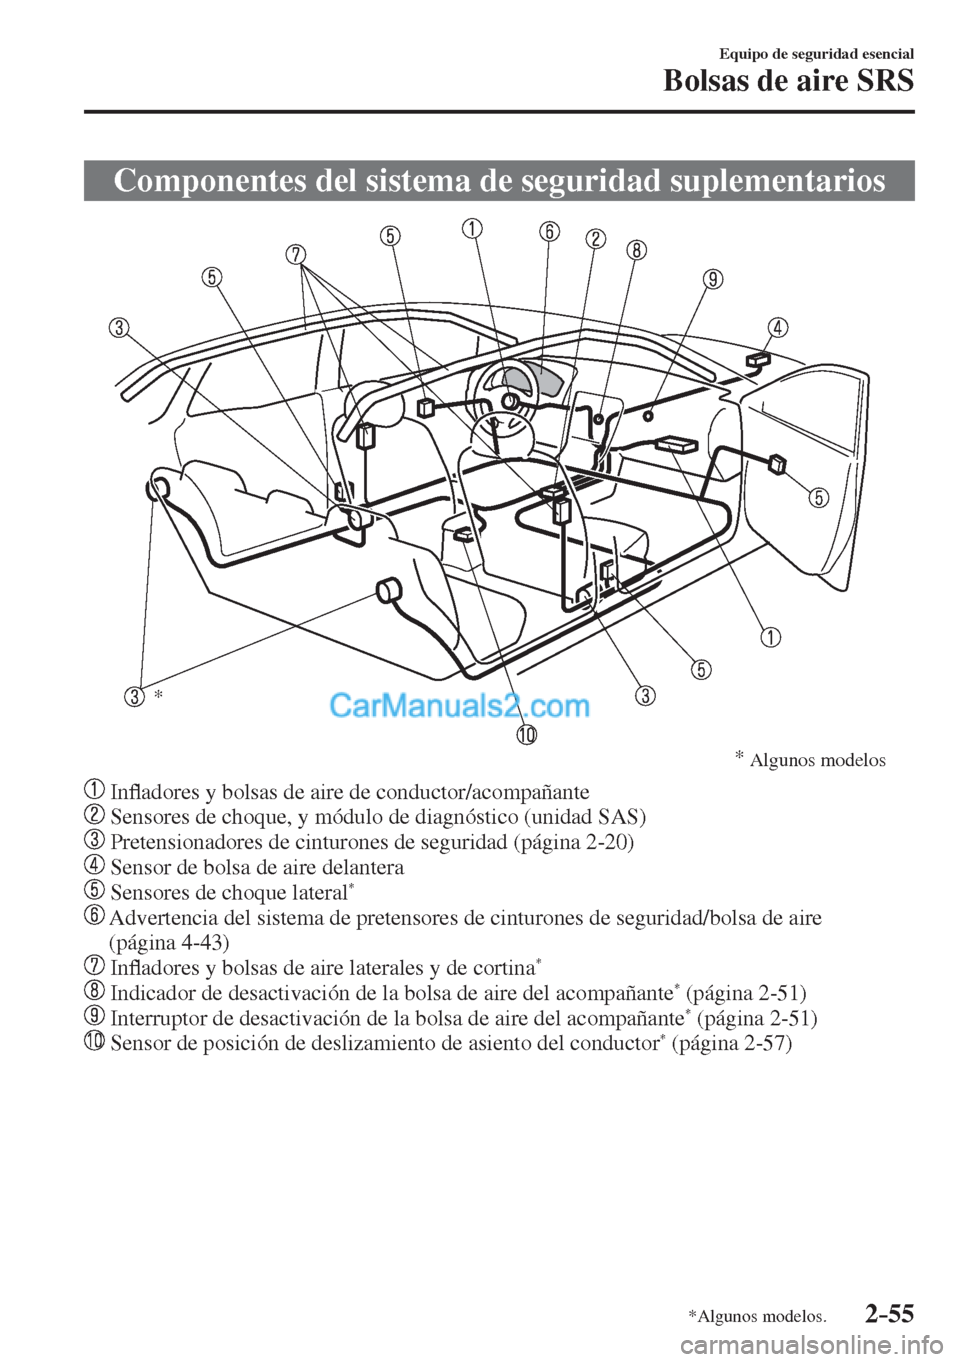 MAZDA MODEL 2 2017  Manual del propietario (in Spanish) 2–55
Equipo de seguridad esencial
Bolsas de aire SRS
*Algunos modelos.
 Componentes del sistema de seguridad suplementarios
           
* 
* 
Algunos modelos
 
   
   In�À adores y bolsas de aire d